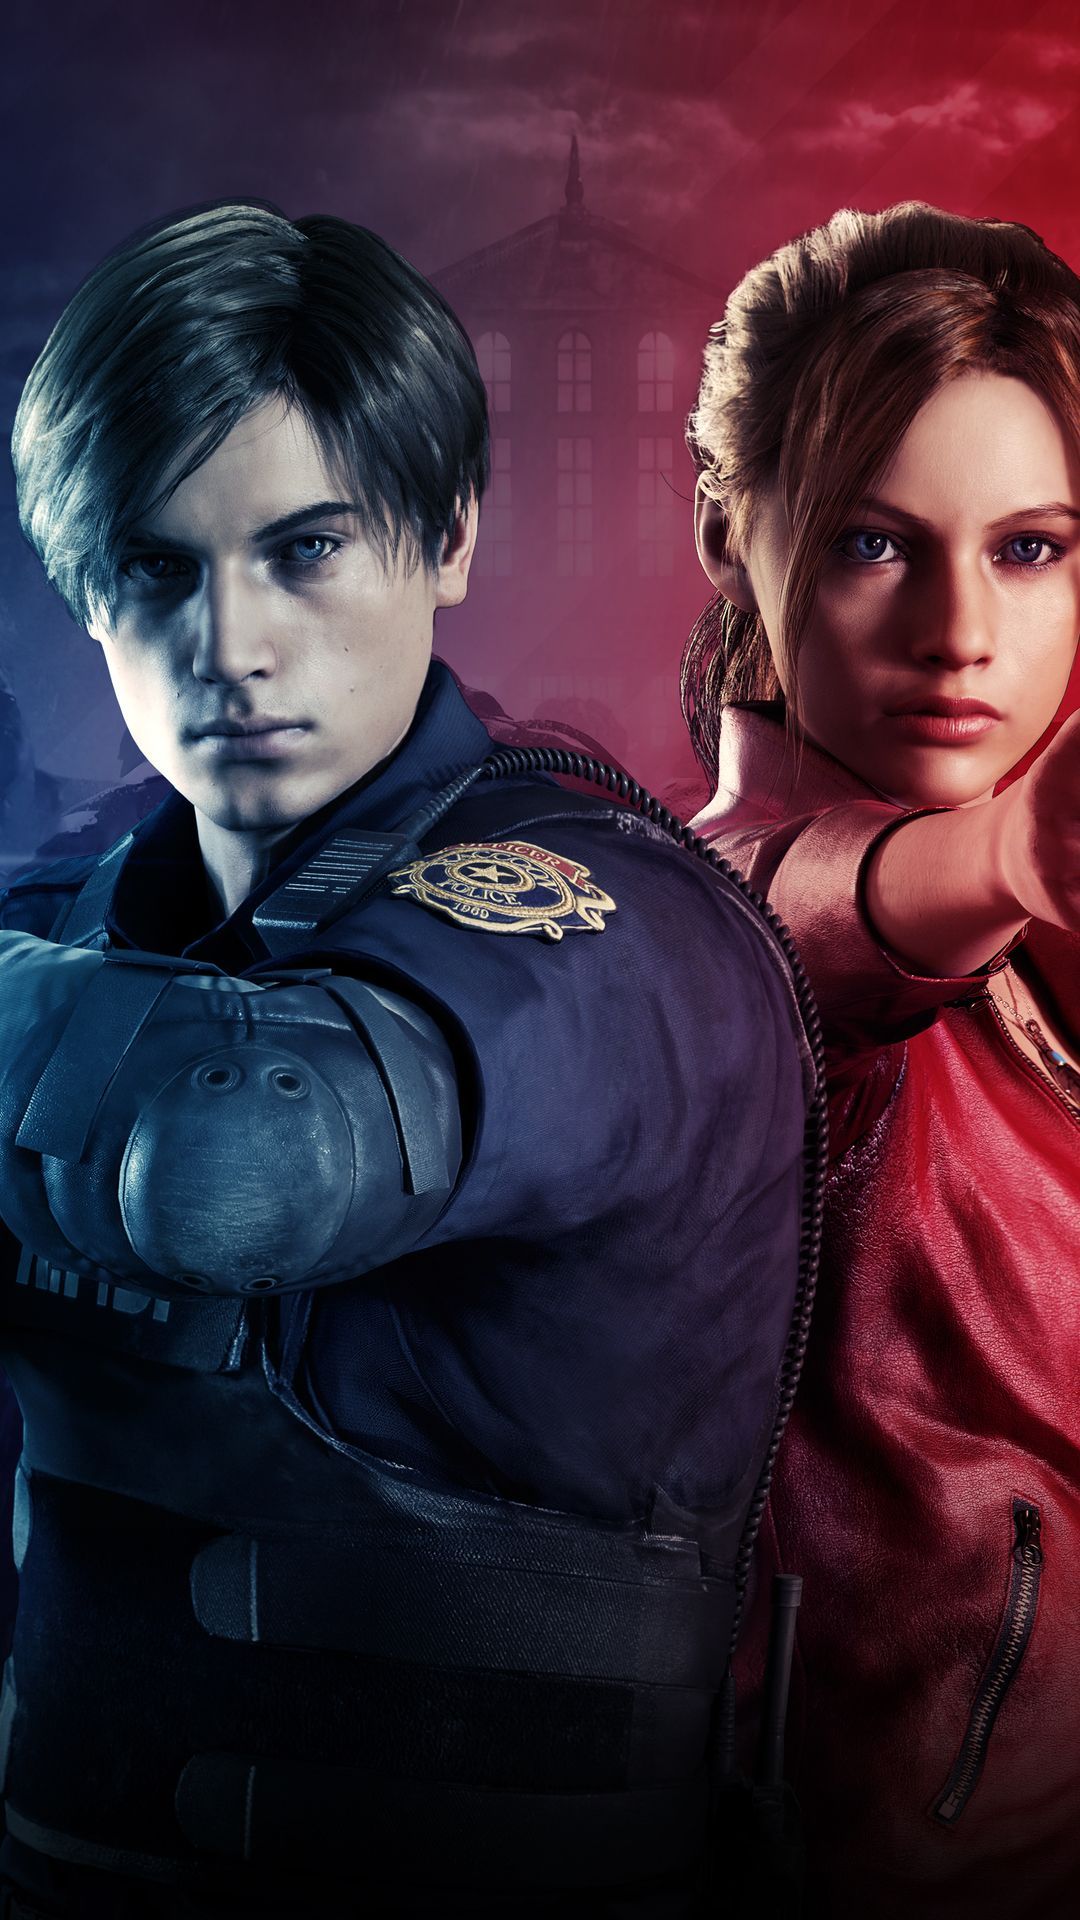 Resident Evil 2 Remake Wallpaper Free Resident Evil 2 Remake Background